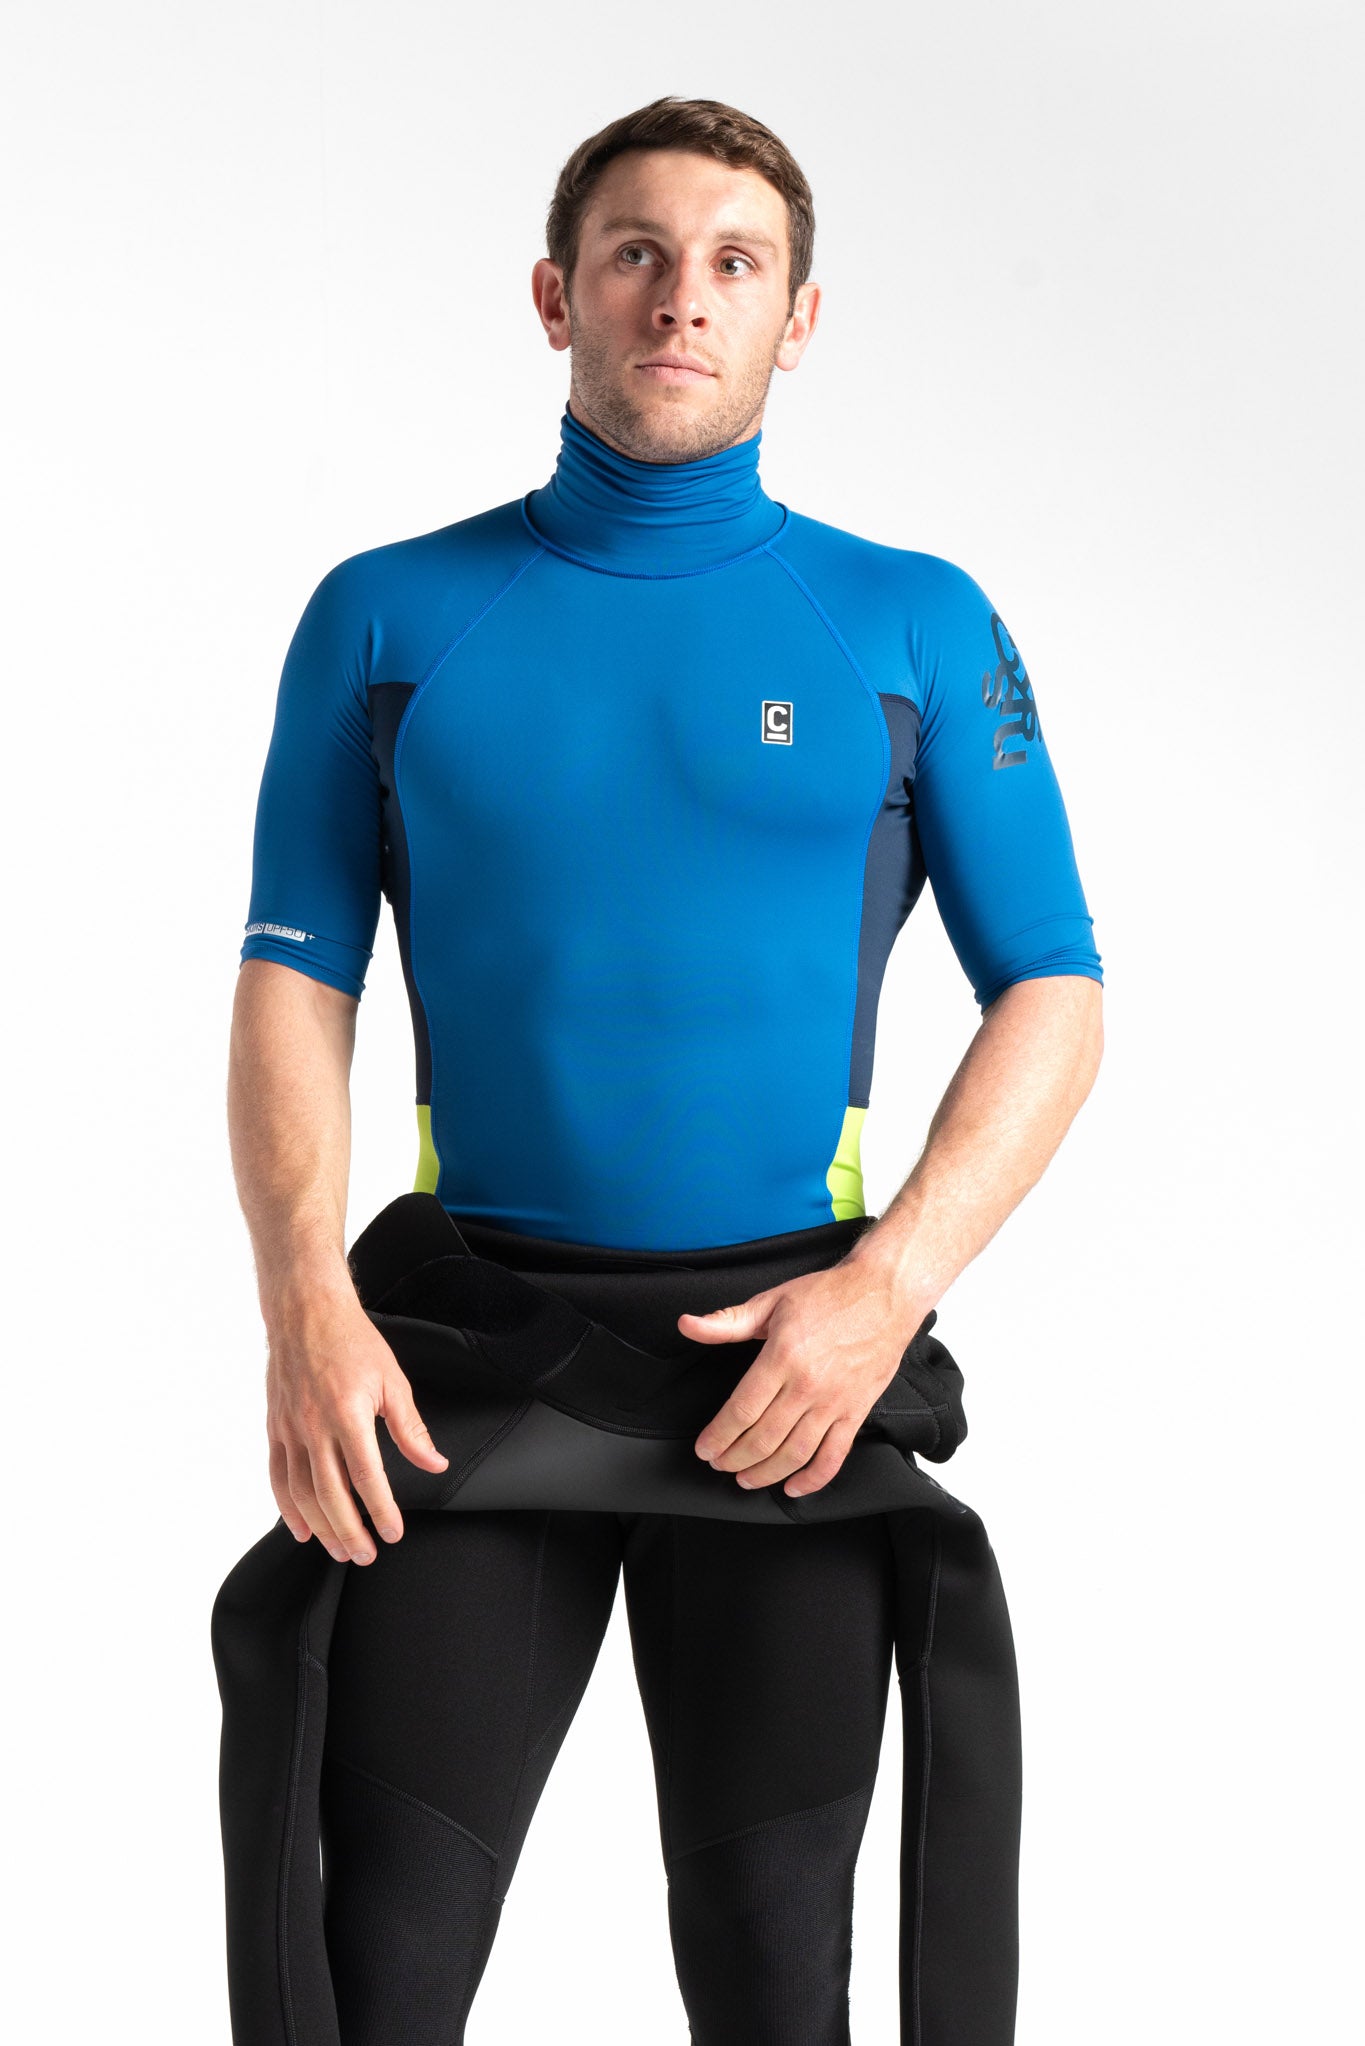 C-Skins UV50 Skins Turtle Neck Rash Vest in Slate Blue/Navy/Lime - Front